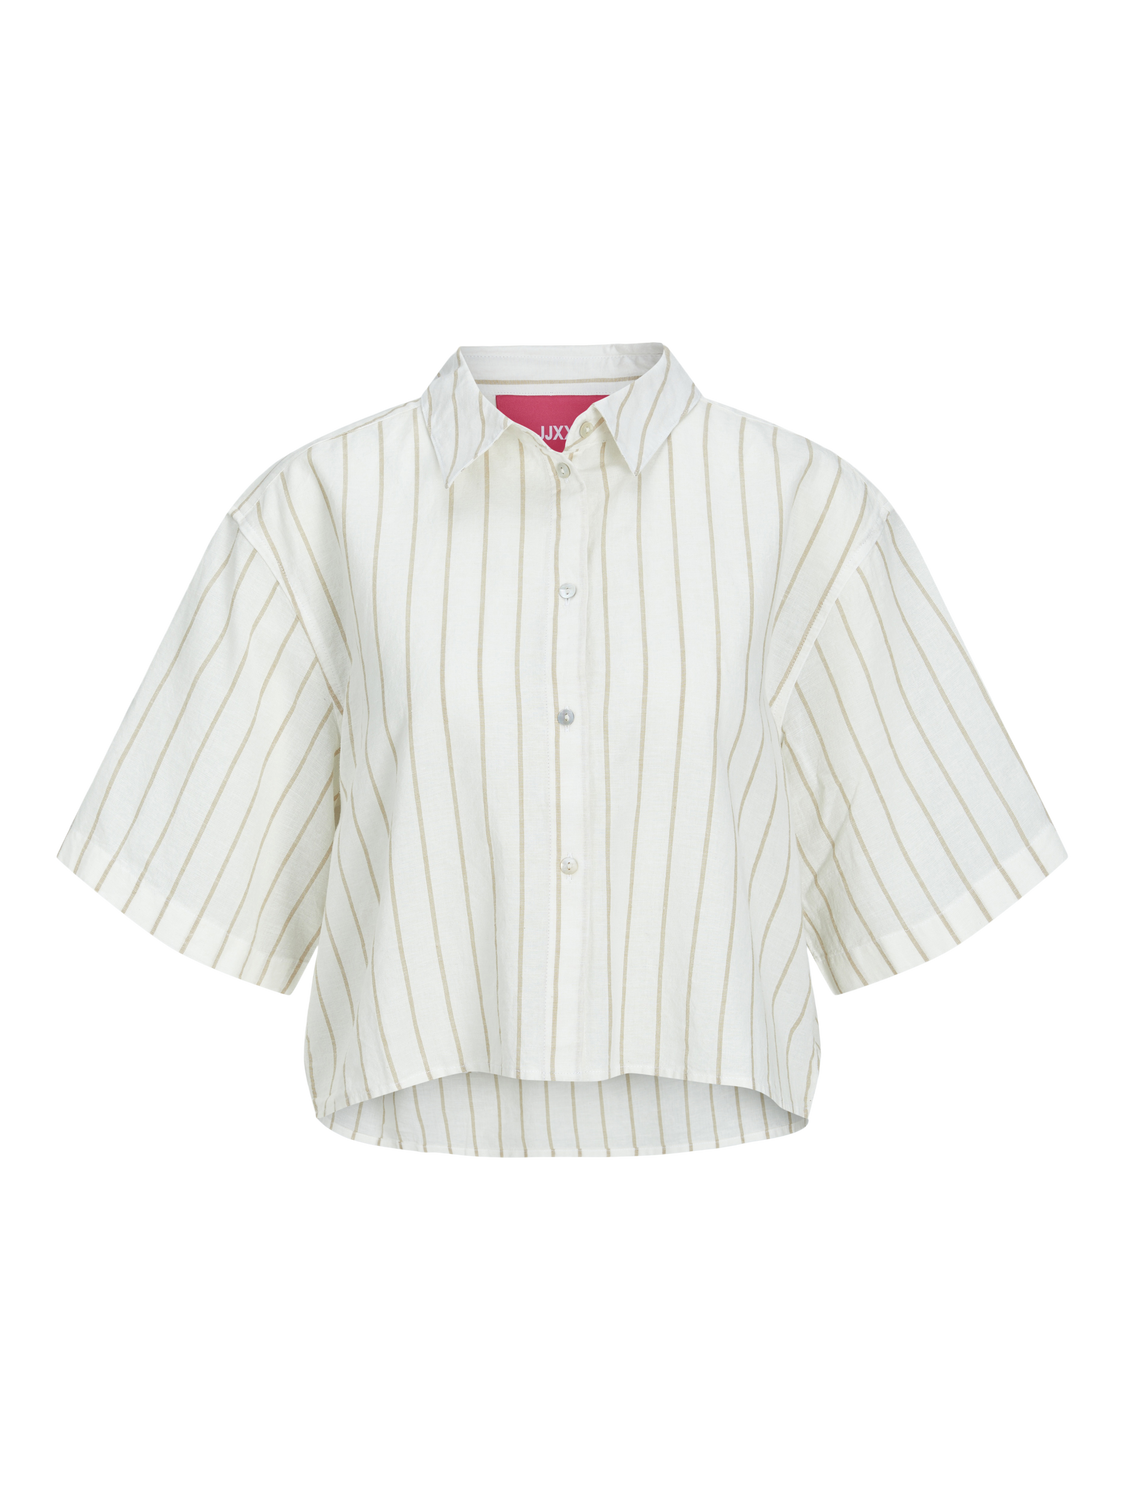 JJXX JXLULU Neformalus marškiniai -Blanc de Blanc - 12231335